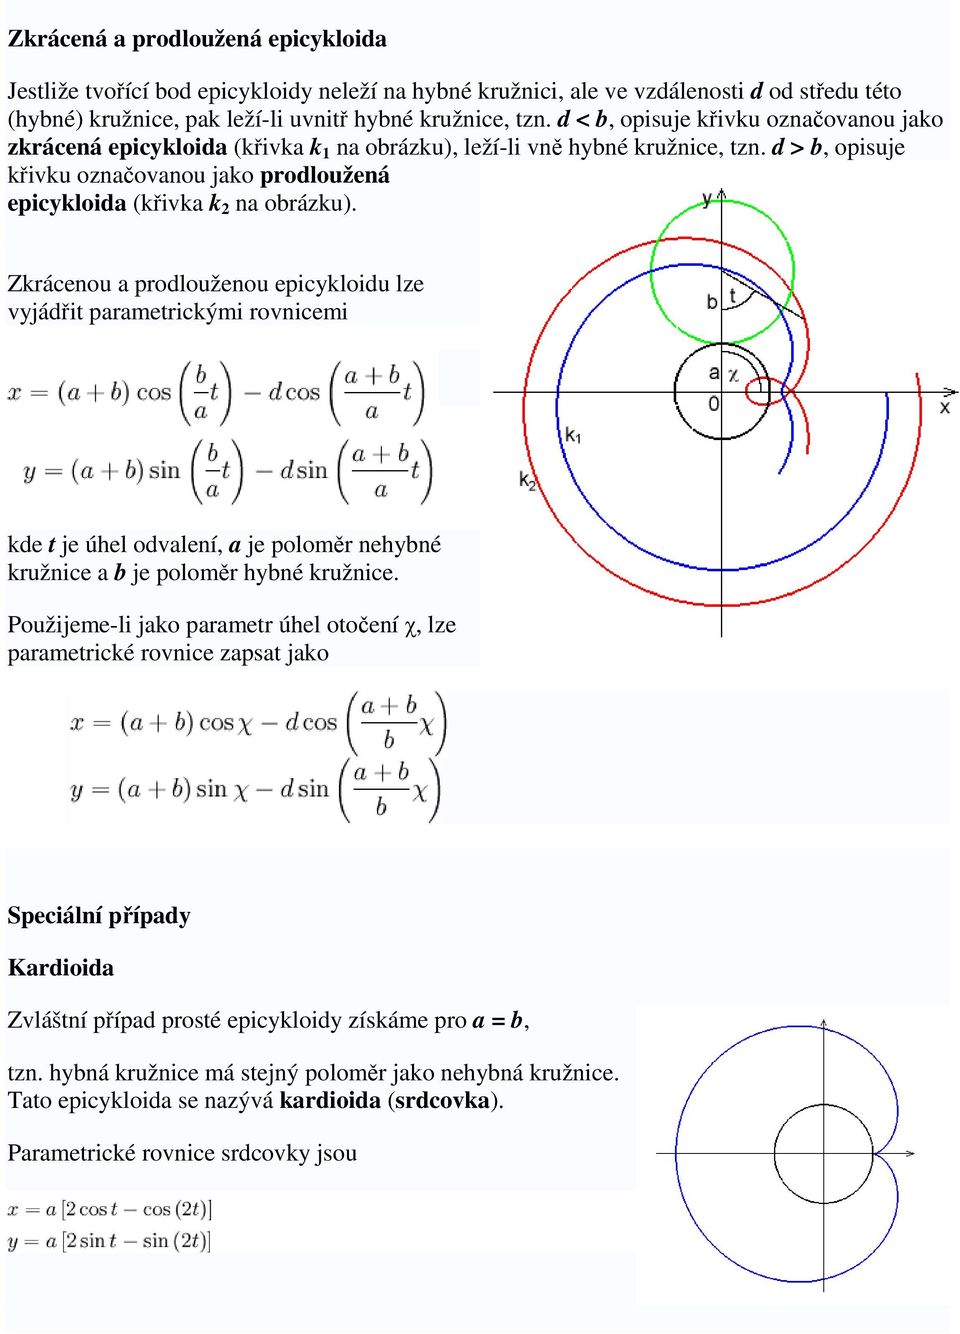 Zkrácenou a prodlouženou epicykloidu lze vyjádit parametrickými rovnicemi kde t je úhel odvalení, a je polomr nehybné kružnice a b je polomr hybné kružnice.